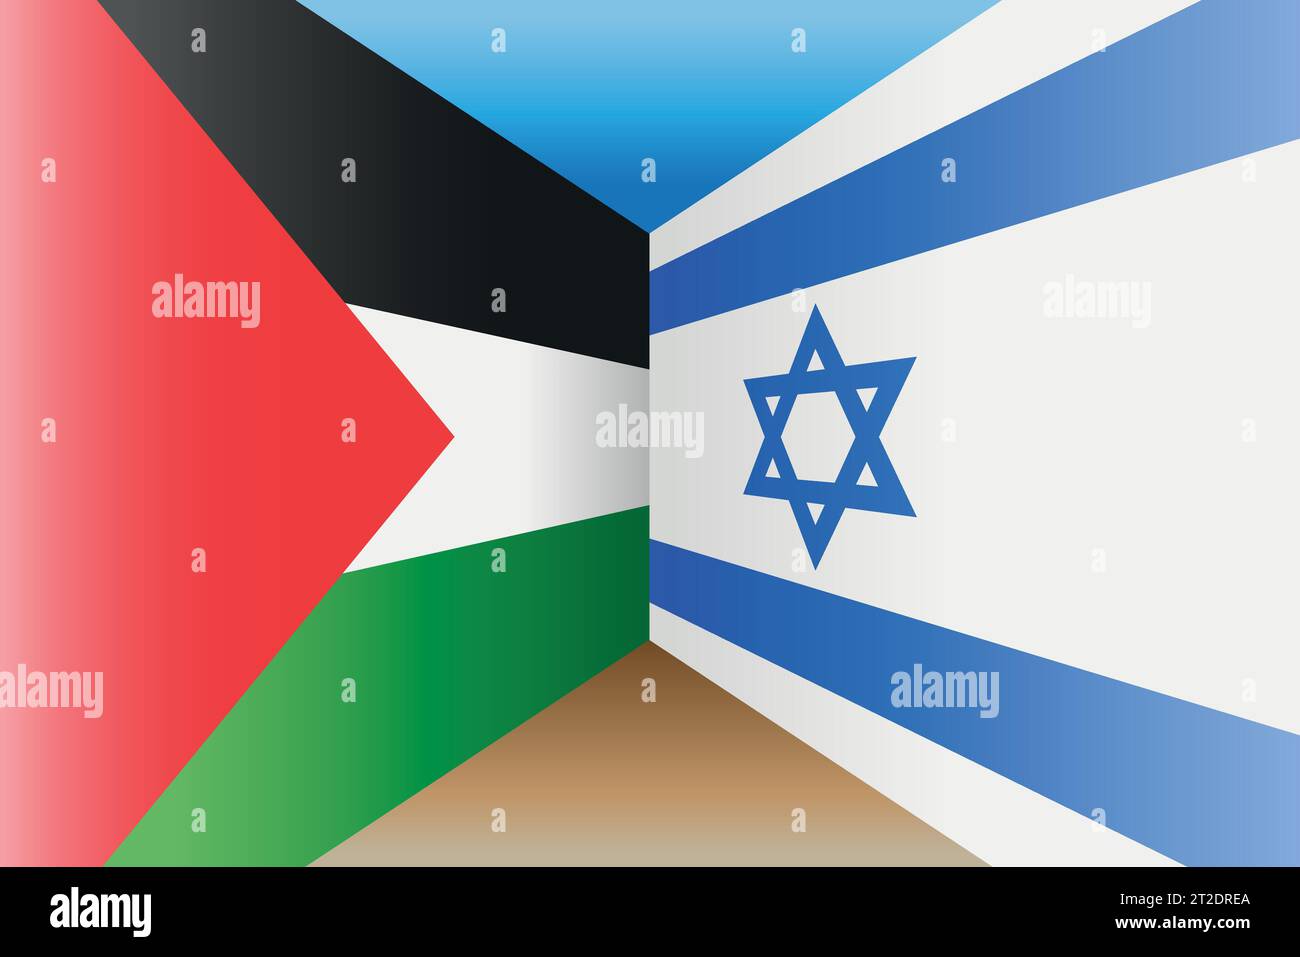 Le bandiere di Palestina e Israele sono rivolte l'una verso l'altra in prospettiva, illustrazione vettoriale Illustrazione Vettoriale